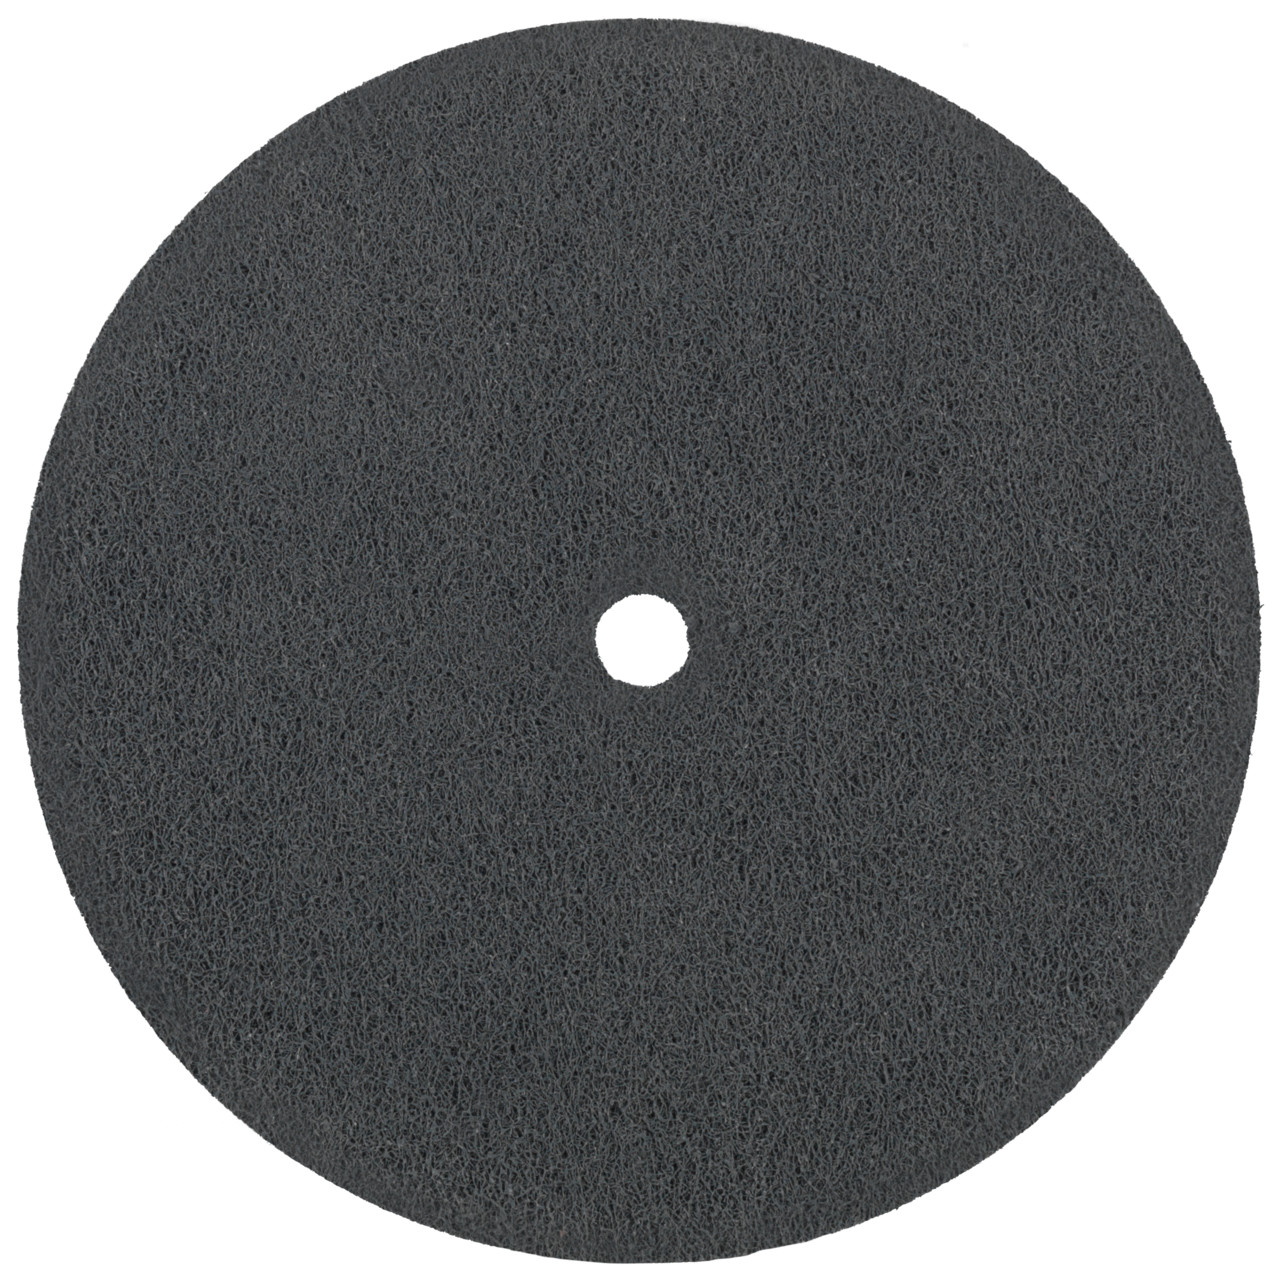 Tyrolit Discos compactos prensados DxDxH 152x6x12,7 Inserción universal, 6 C FEIN, forma: 1, Art. 34190238